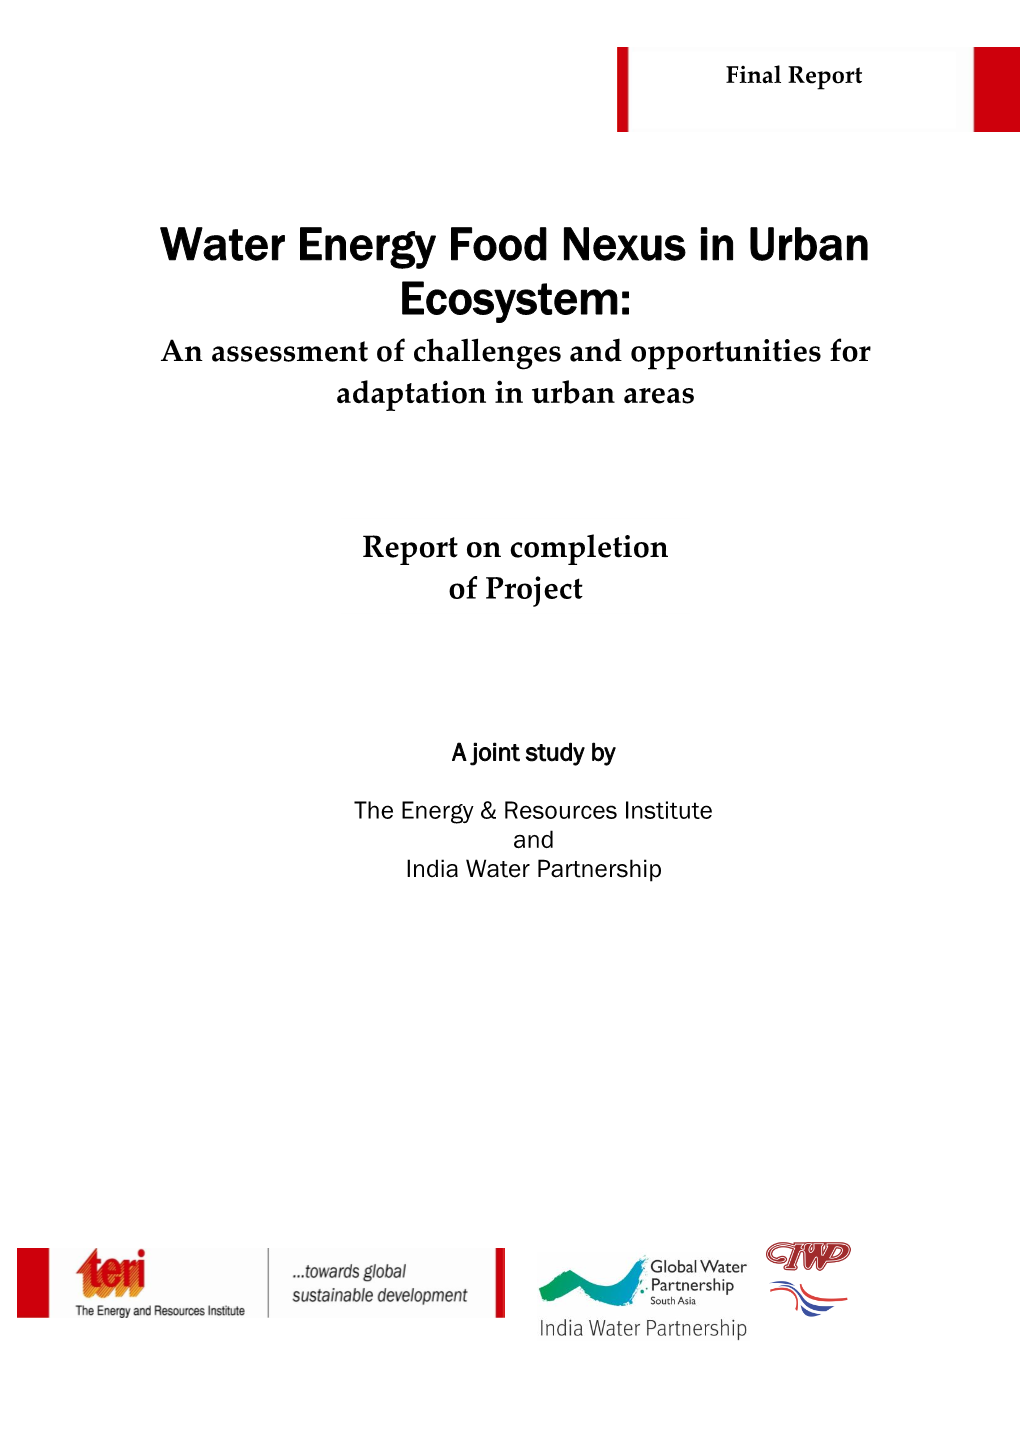 Water Energy Food Nexus in Urban Ecosystem